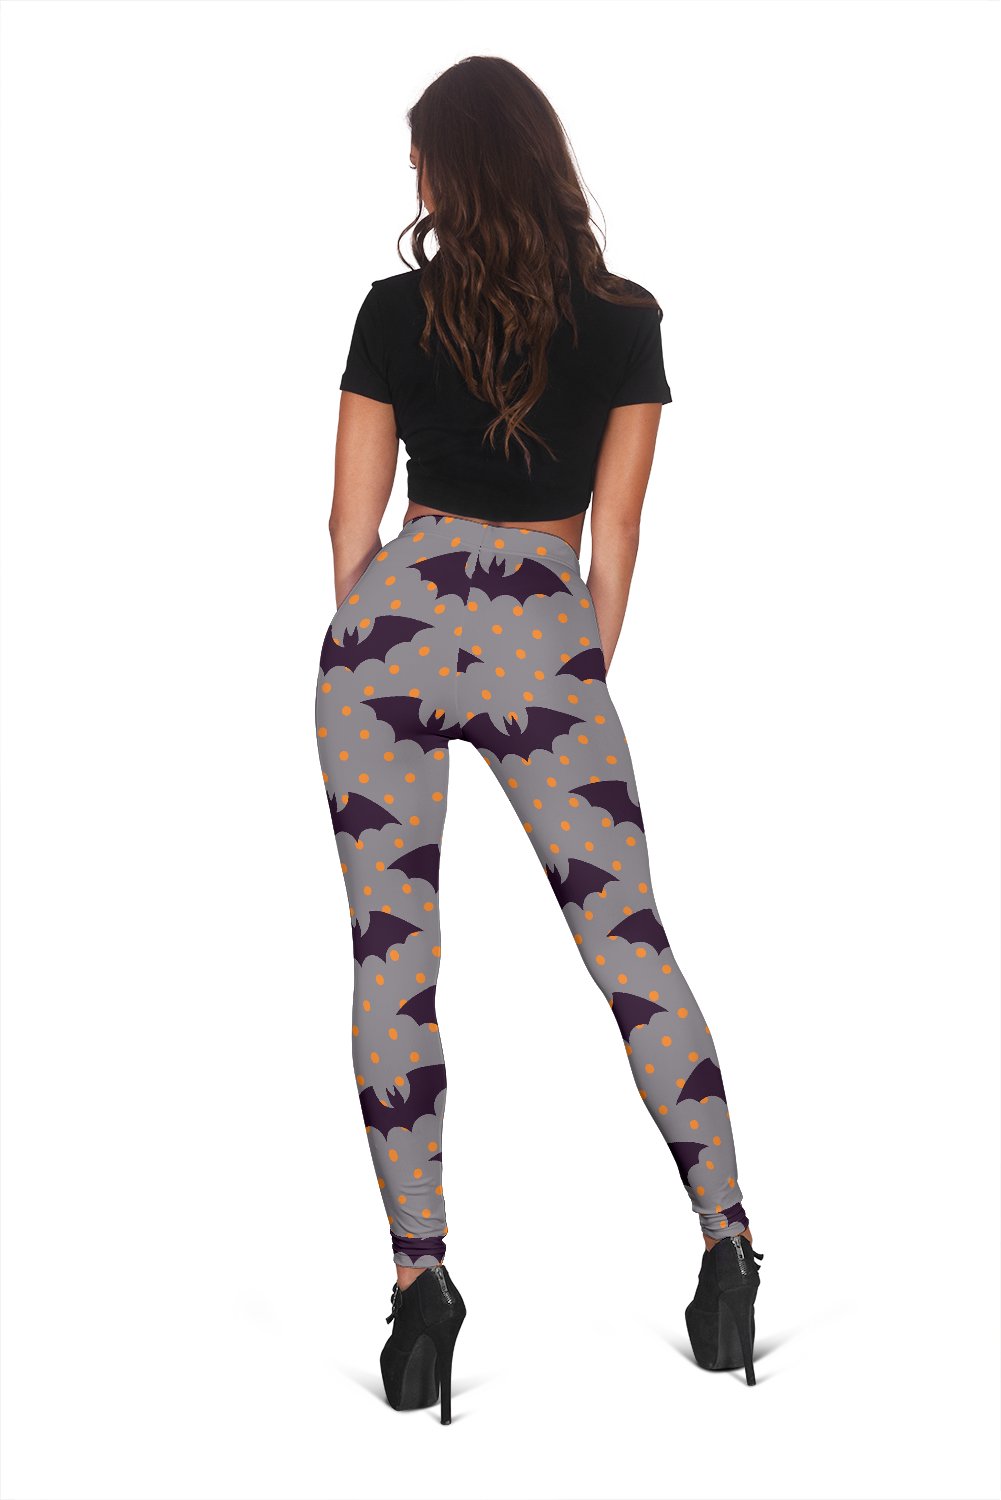 Polka Dot Halloween Bat Pattern Print Print Women Leggings-grizzshop